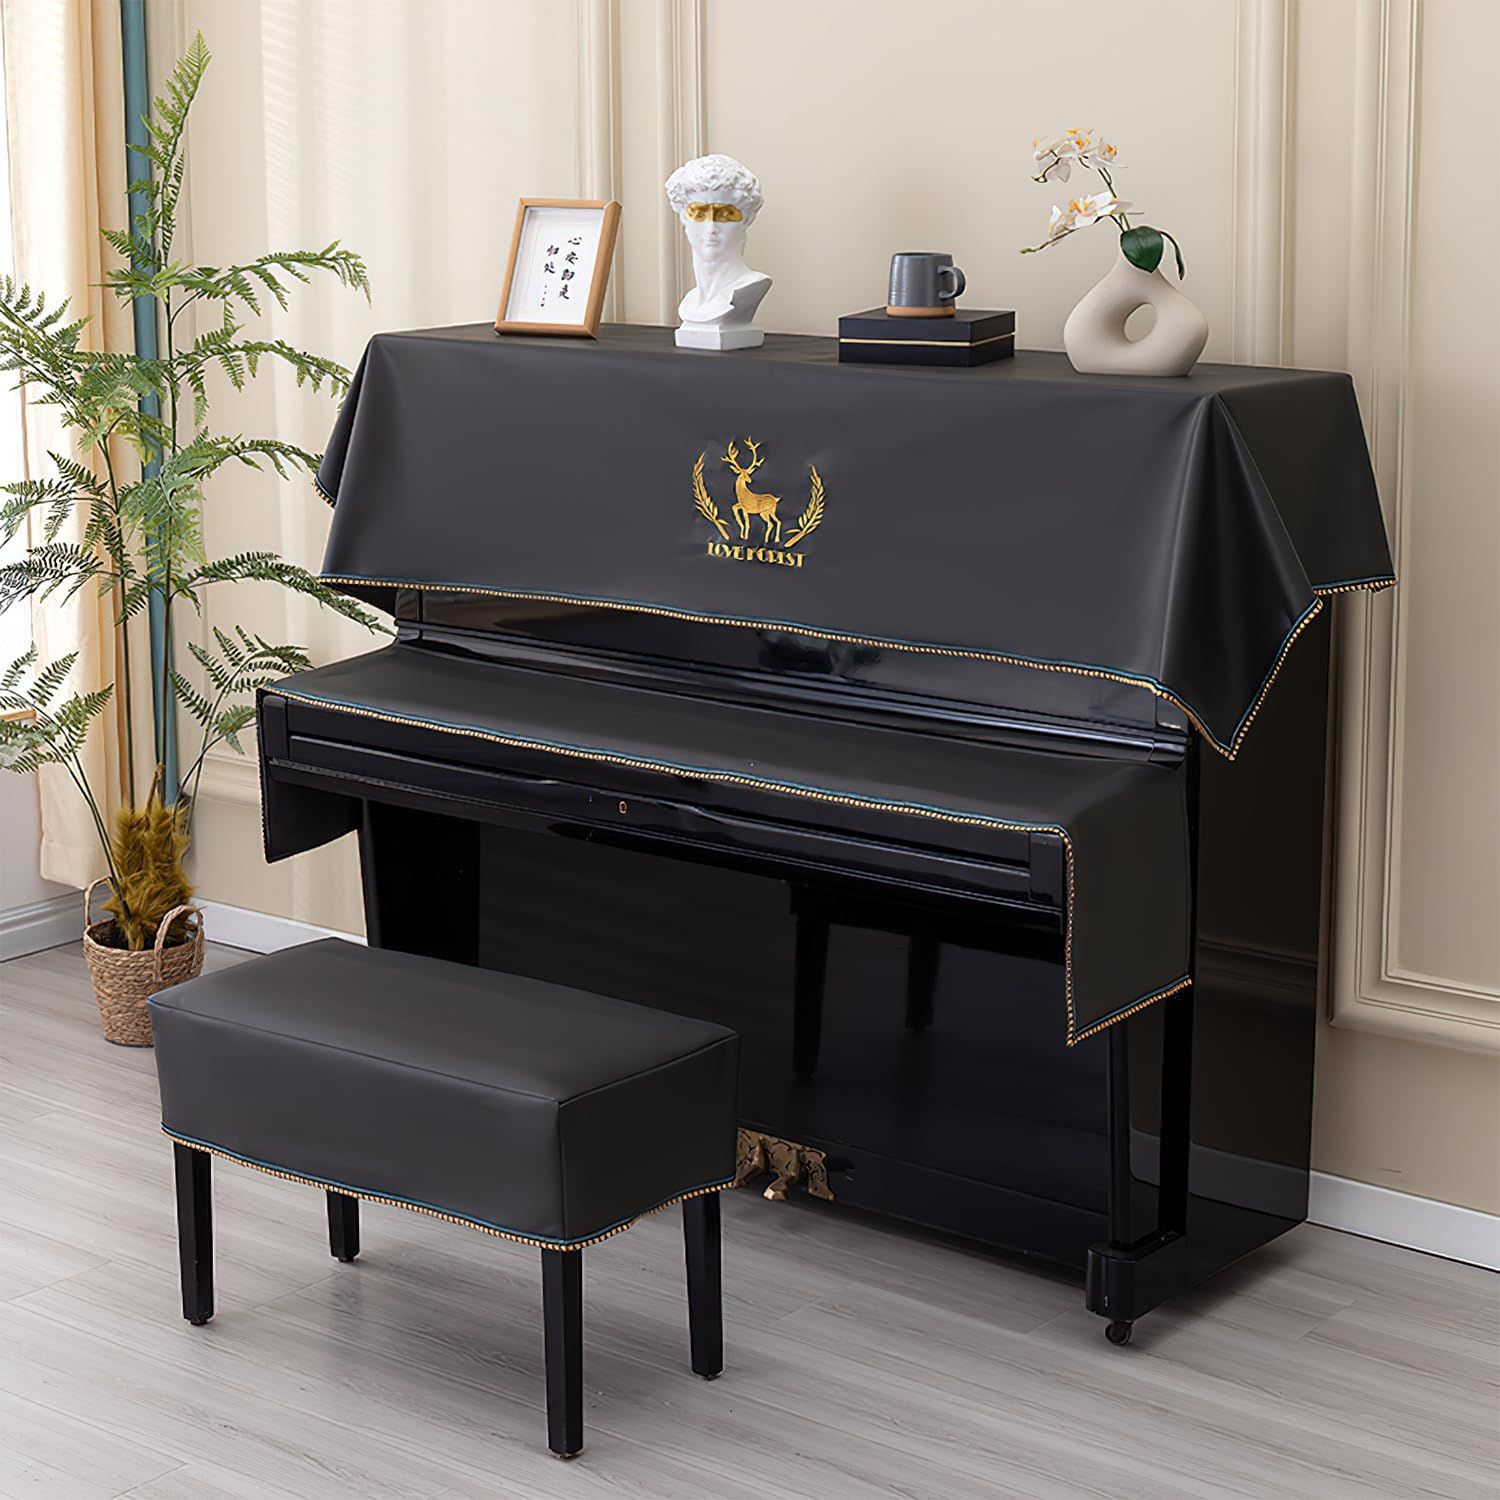 ピアノベンチカバー ピアノ椅子カバー ベンチ保護カバー ピアノアクセサリー 全6色